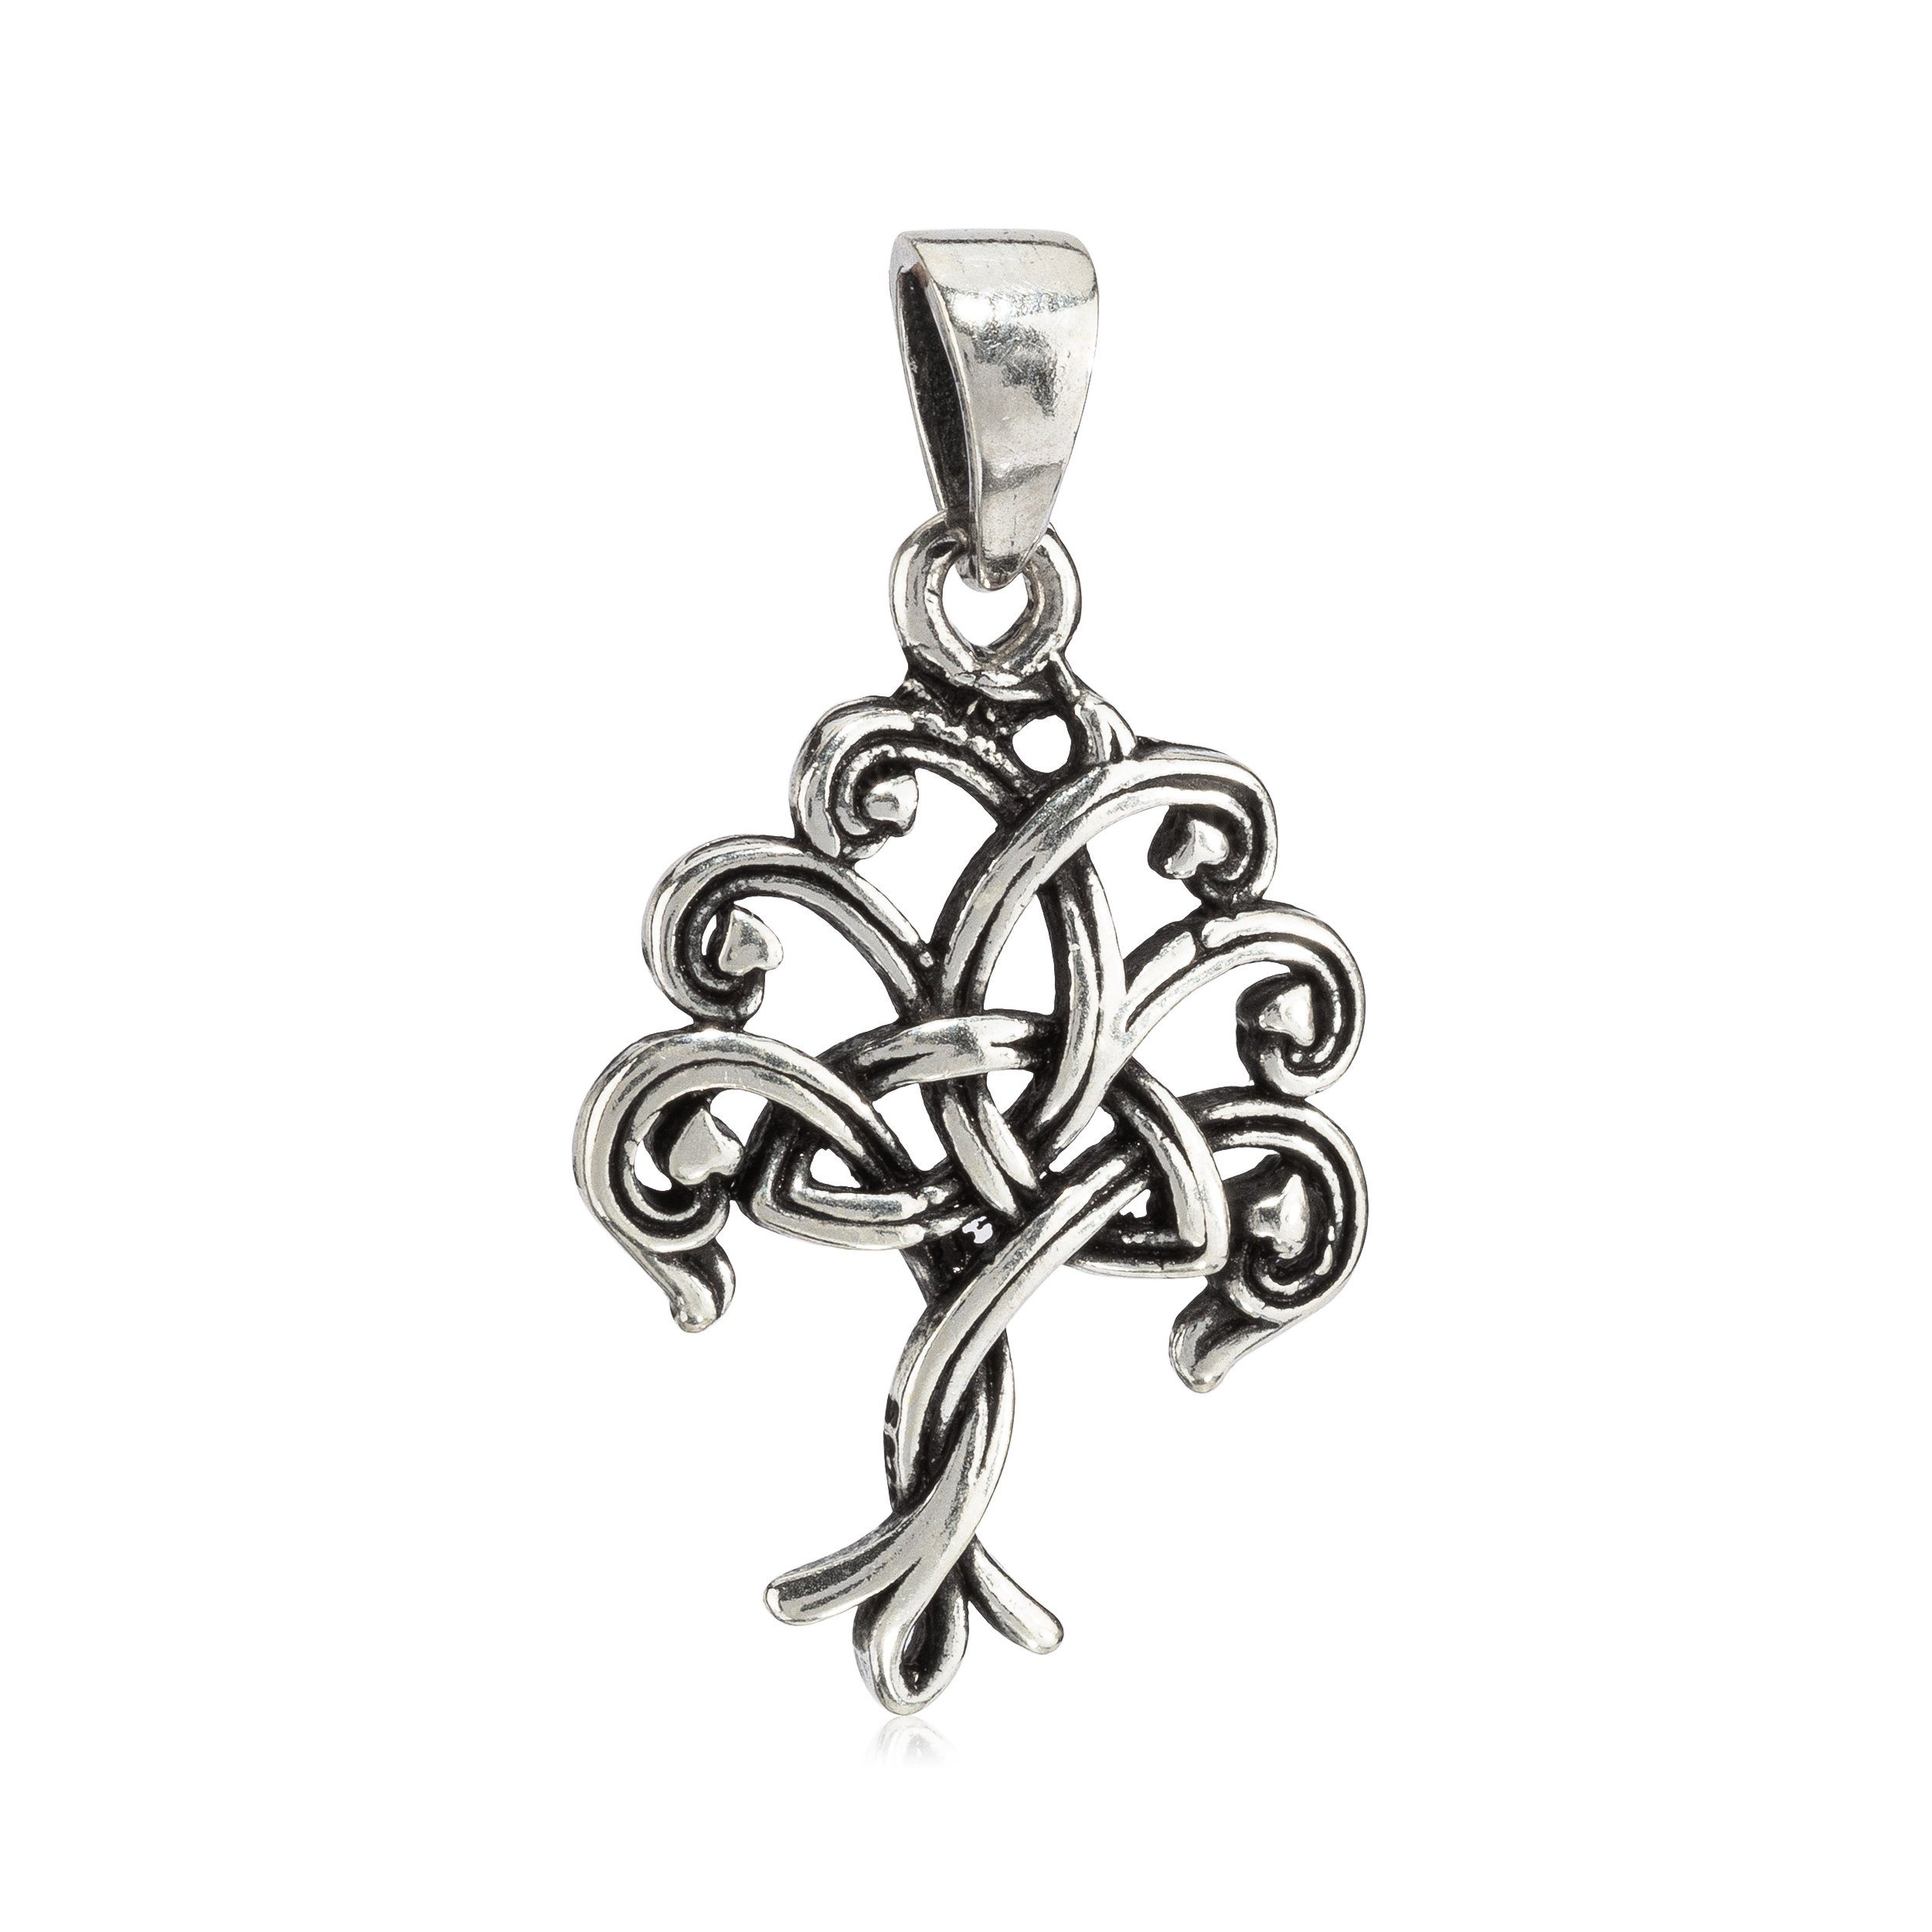 NKlaus Kettenanhänger Kettenanhänger Baum des Lebens 925 Silber 2,5cm L, 925 Sterling Silber Silberschmuck für Damen